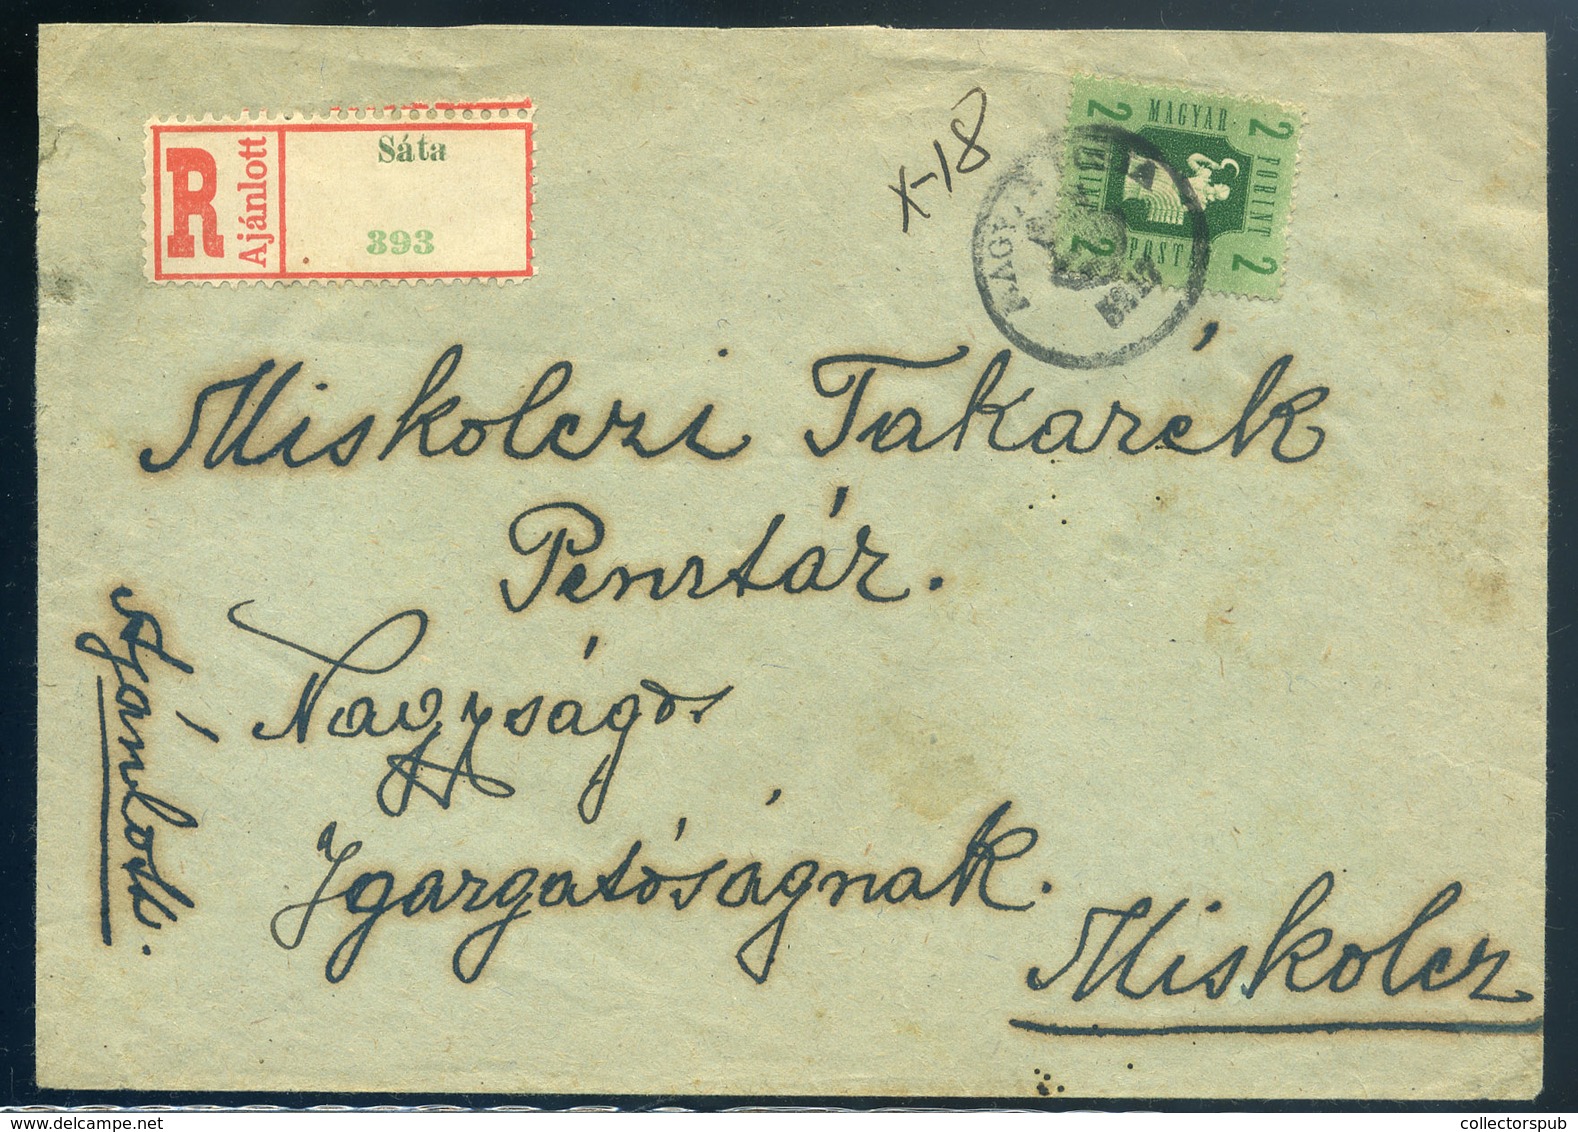 SÁTA 1947. Ajánlott Levél, Kisegítő Bélyegzéssel Miskolcra  /  Reg. Letter, Escort. Pmk To Miskolc - Covers & Documents